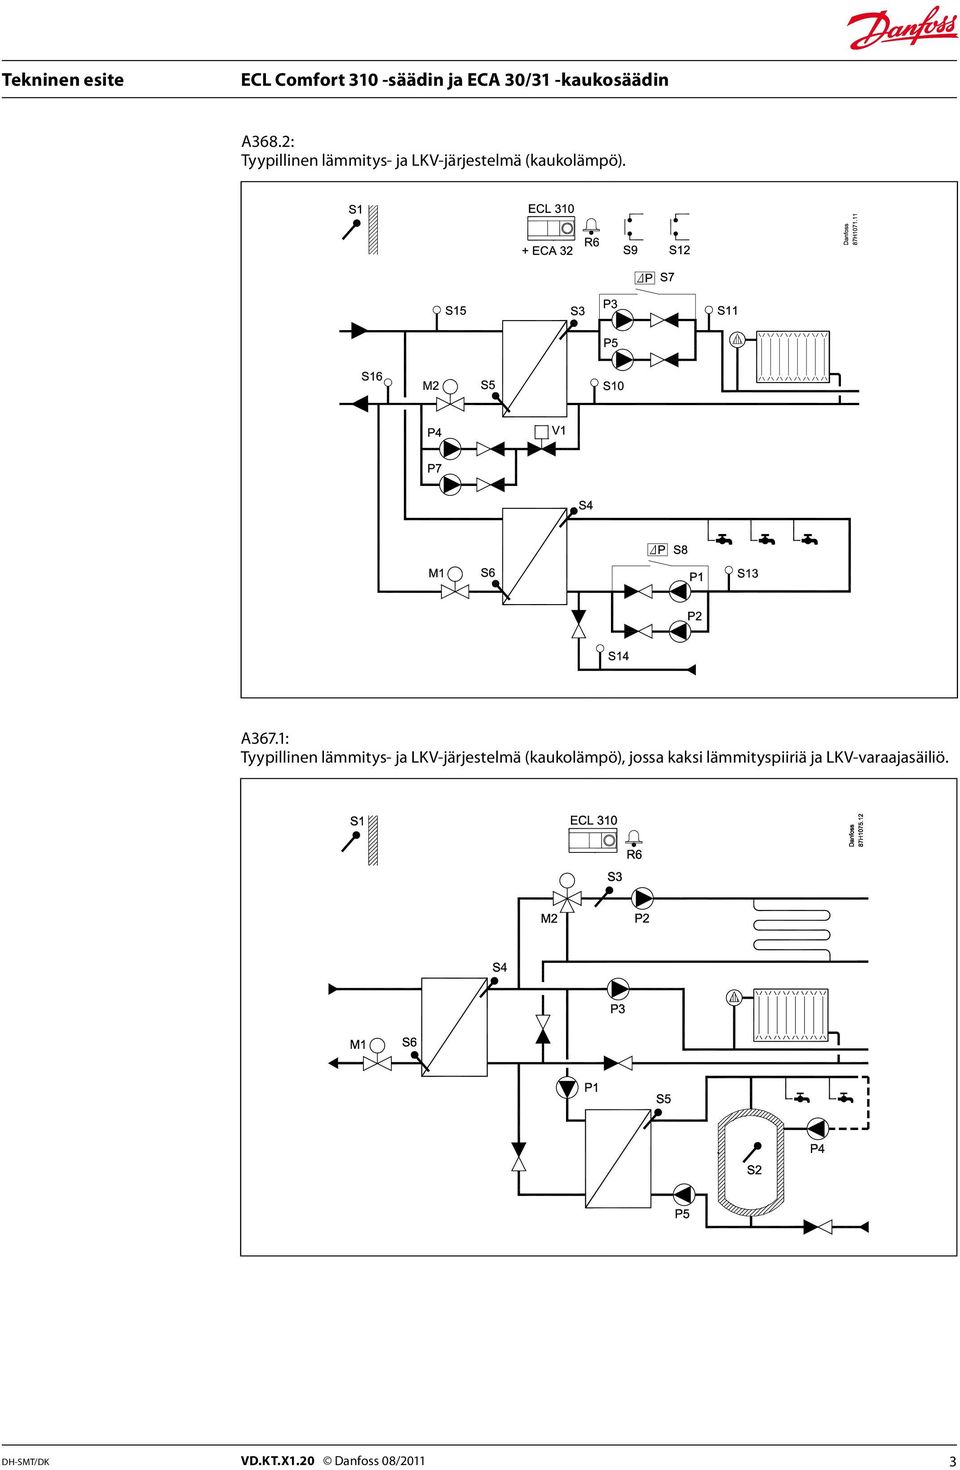 1: Tyypillinen lämmitys- ja LKV-järjestelmä